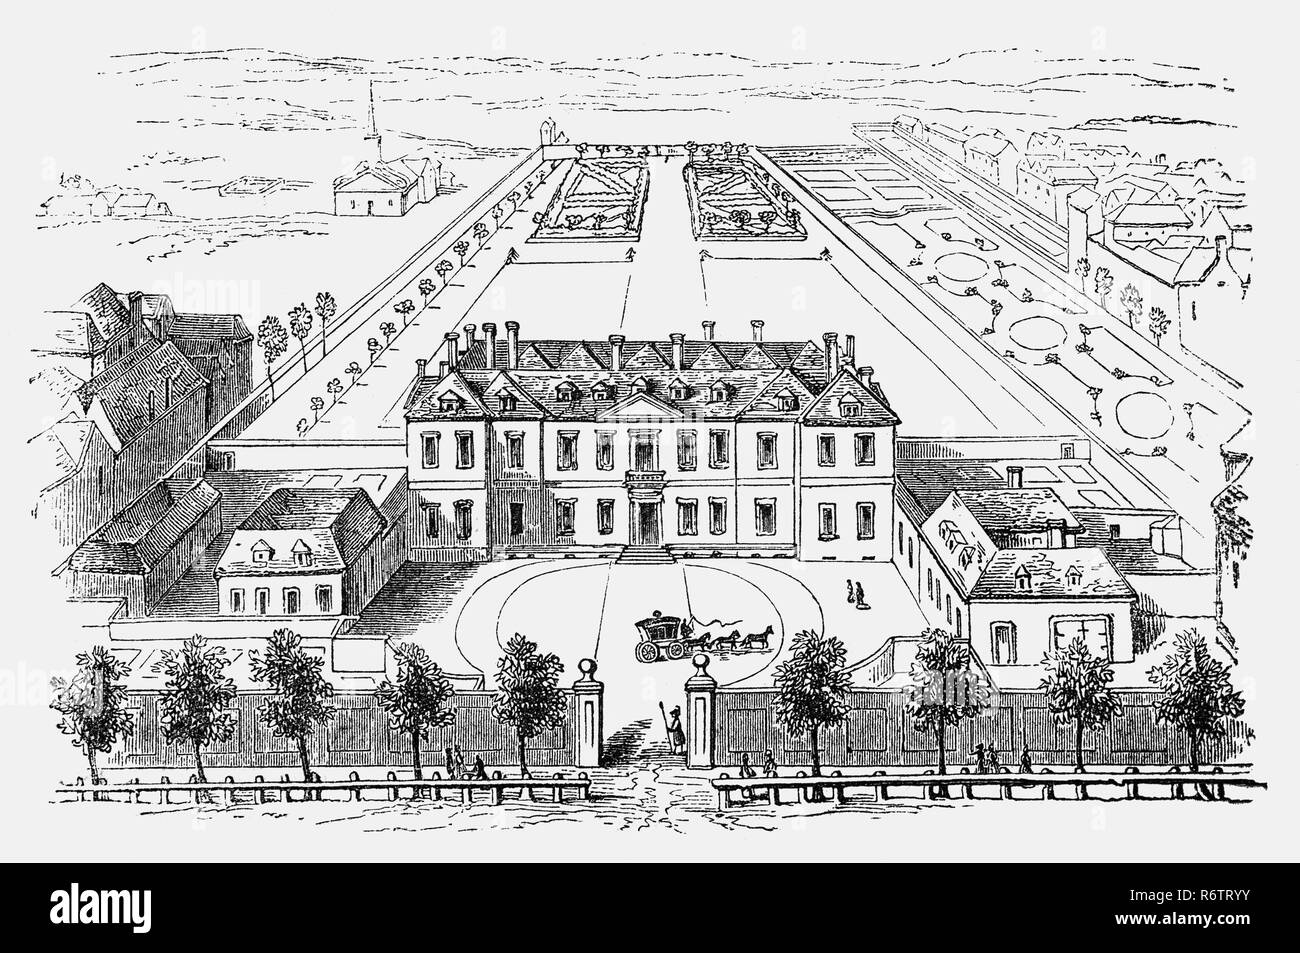 Eine Antenne plan von Burlington House, einer der ersten einer Reihe von großen privaten Residenzen gebaut auf der Nordseite von Piccadilly, zuvor ein Feldweg in der Nähe von London. Es war ein roter Backstein, Doppel-Pile hip-roofed Herrenhaus mit versenkter Mitte, typisch für den Stil der Zeit. Das Haus war in einem unvollständigen Zustand im Jahre 1667 an Richard Boyle, der ersten Earl of Burlington, verkauft, von dem es seinen Namen ableitet. Im Jahre 1704 wurde das Haus an 10-jährigen Richard Boyle, dritten Earl of Burlington, wer war der Patron des Palladianischen Bewegung in England zu werden. Stockfoto